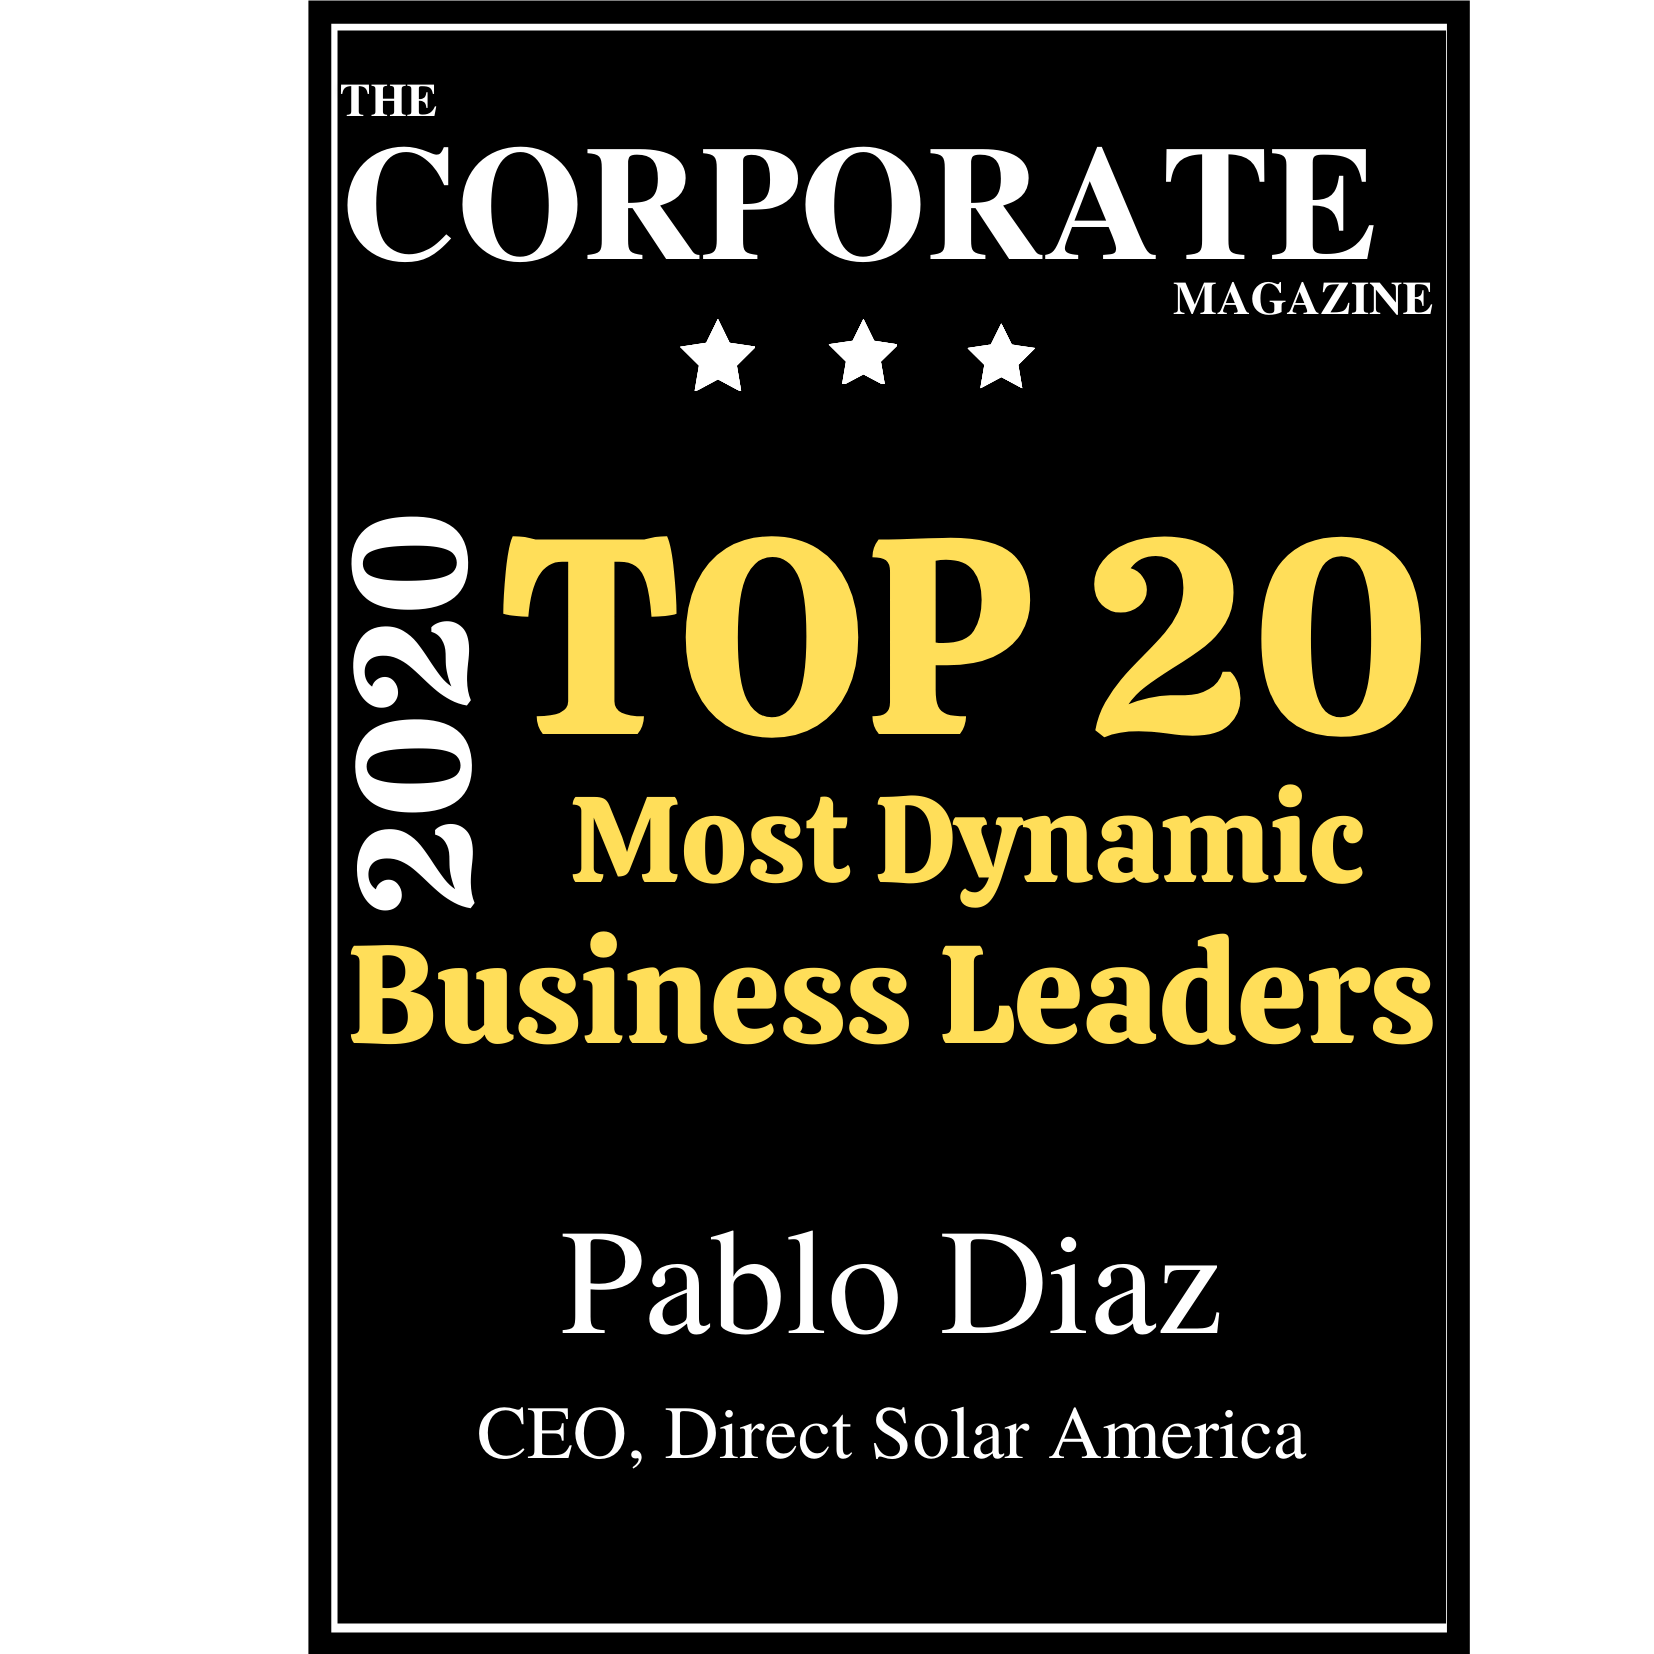 Pablo-Diaz-Top-Business-Magazines